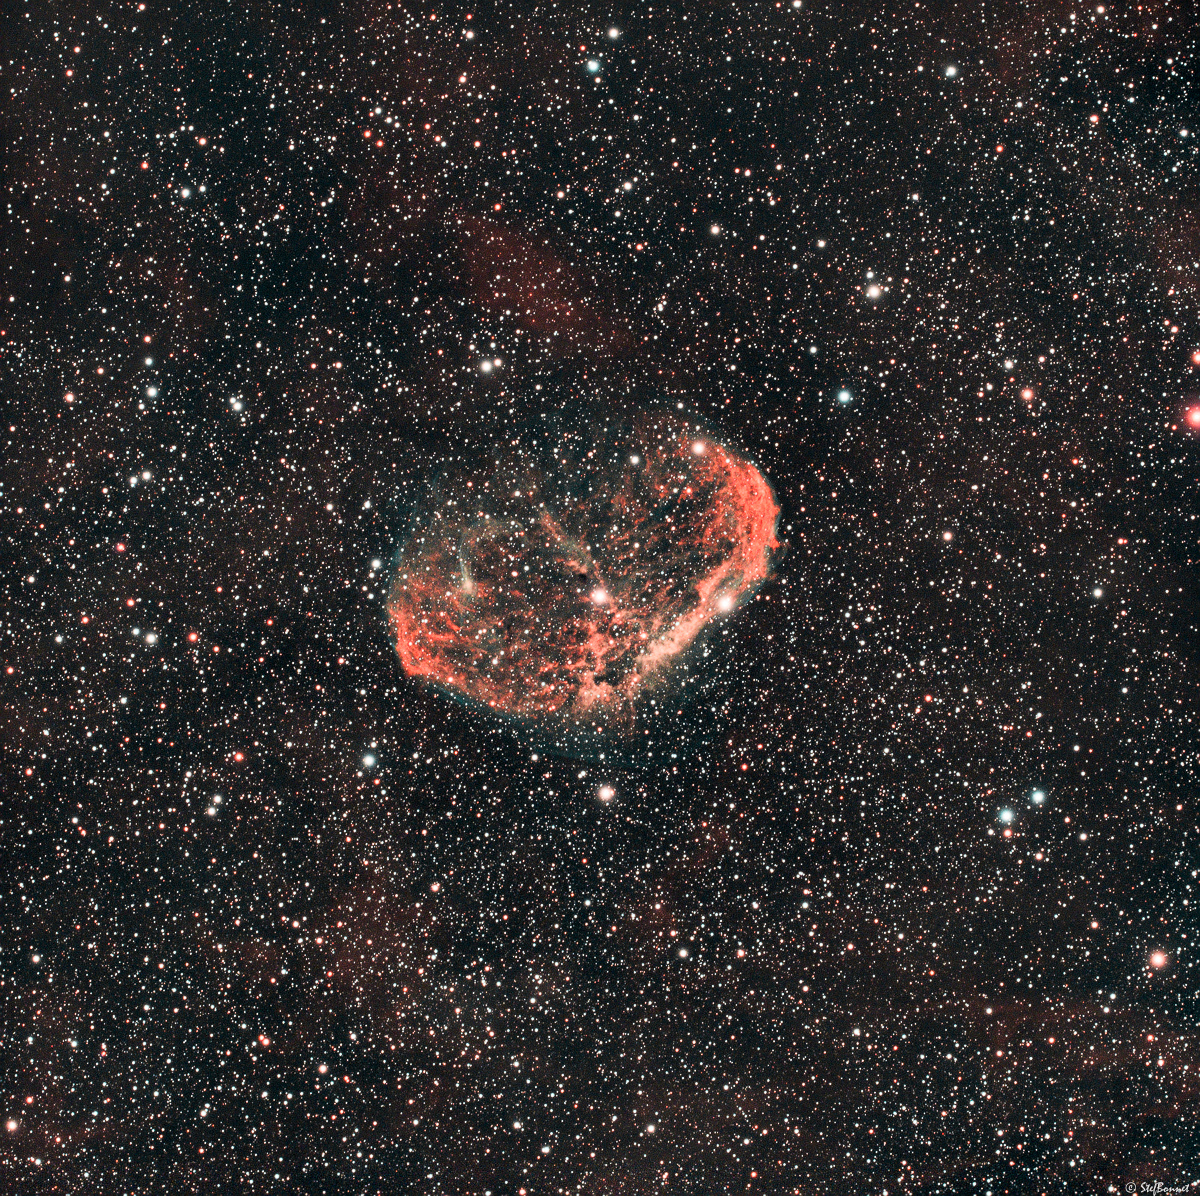 61ca14f5194c9_Croissant-NGC6888-20210813-Web.jpg.a82fbd47c049304f7c79e9158f6f0882.jpg